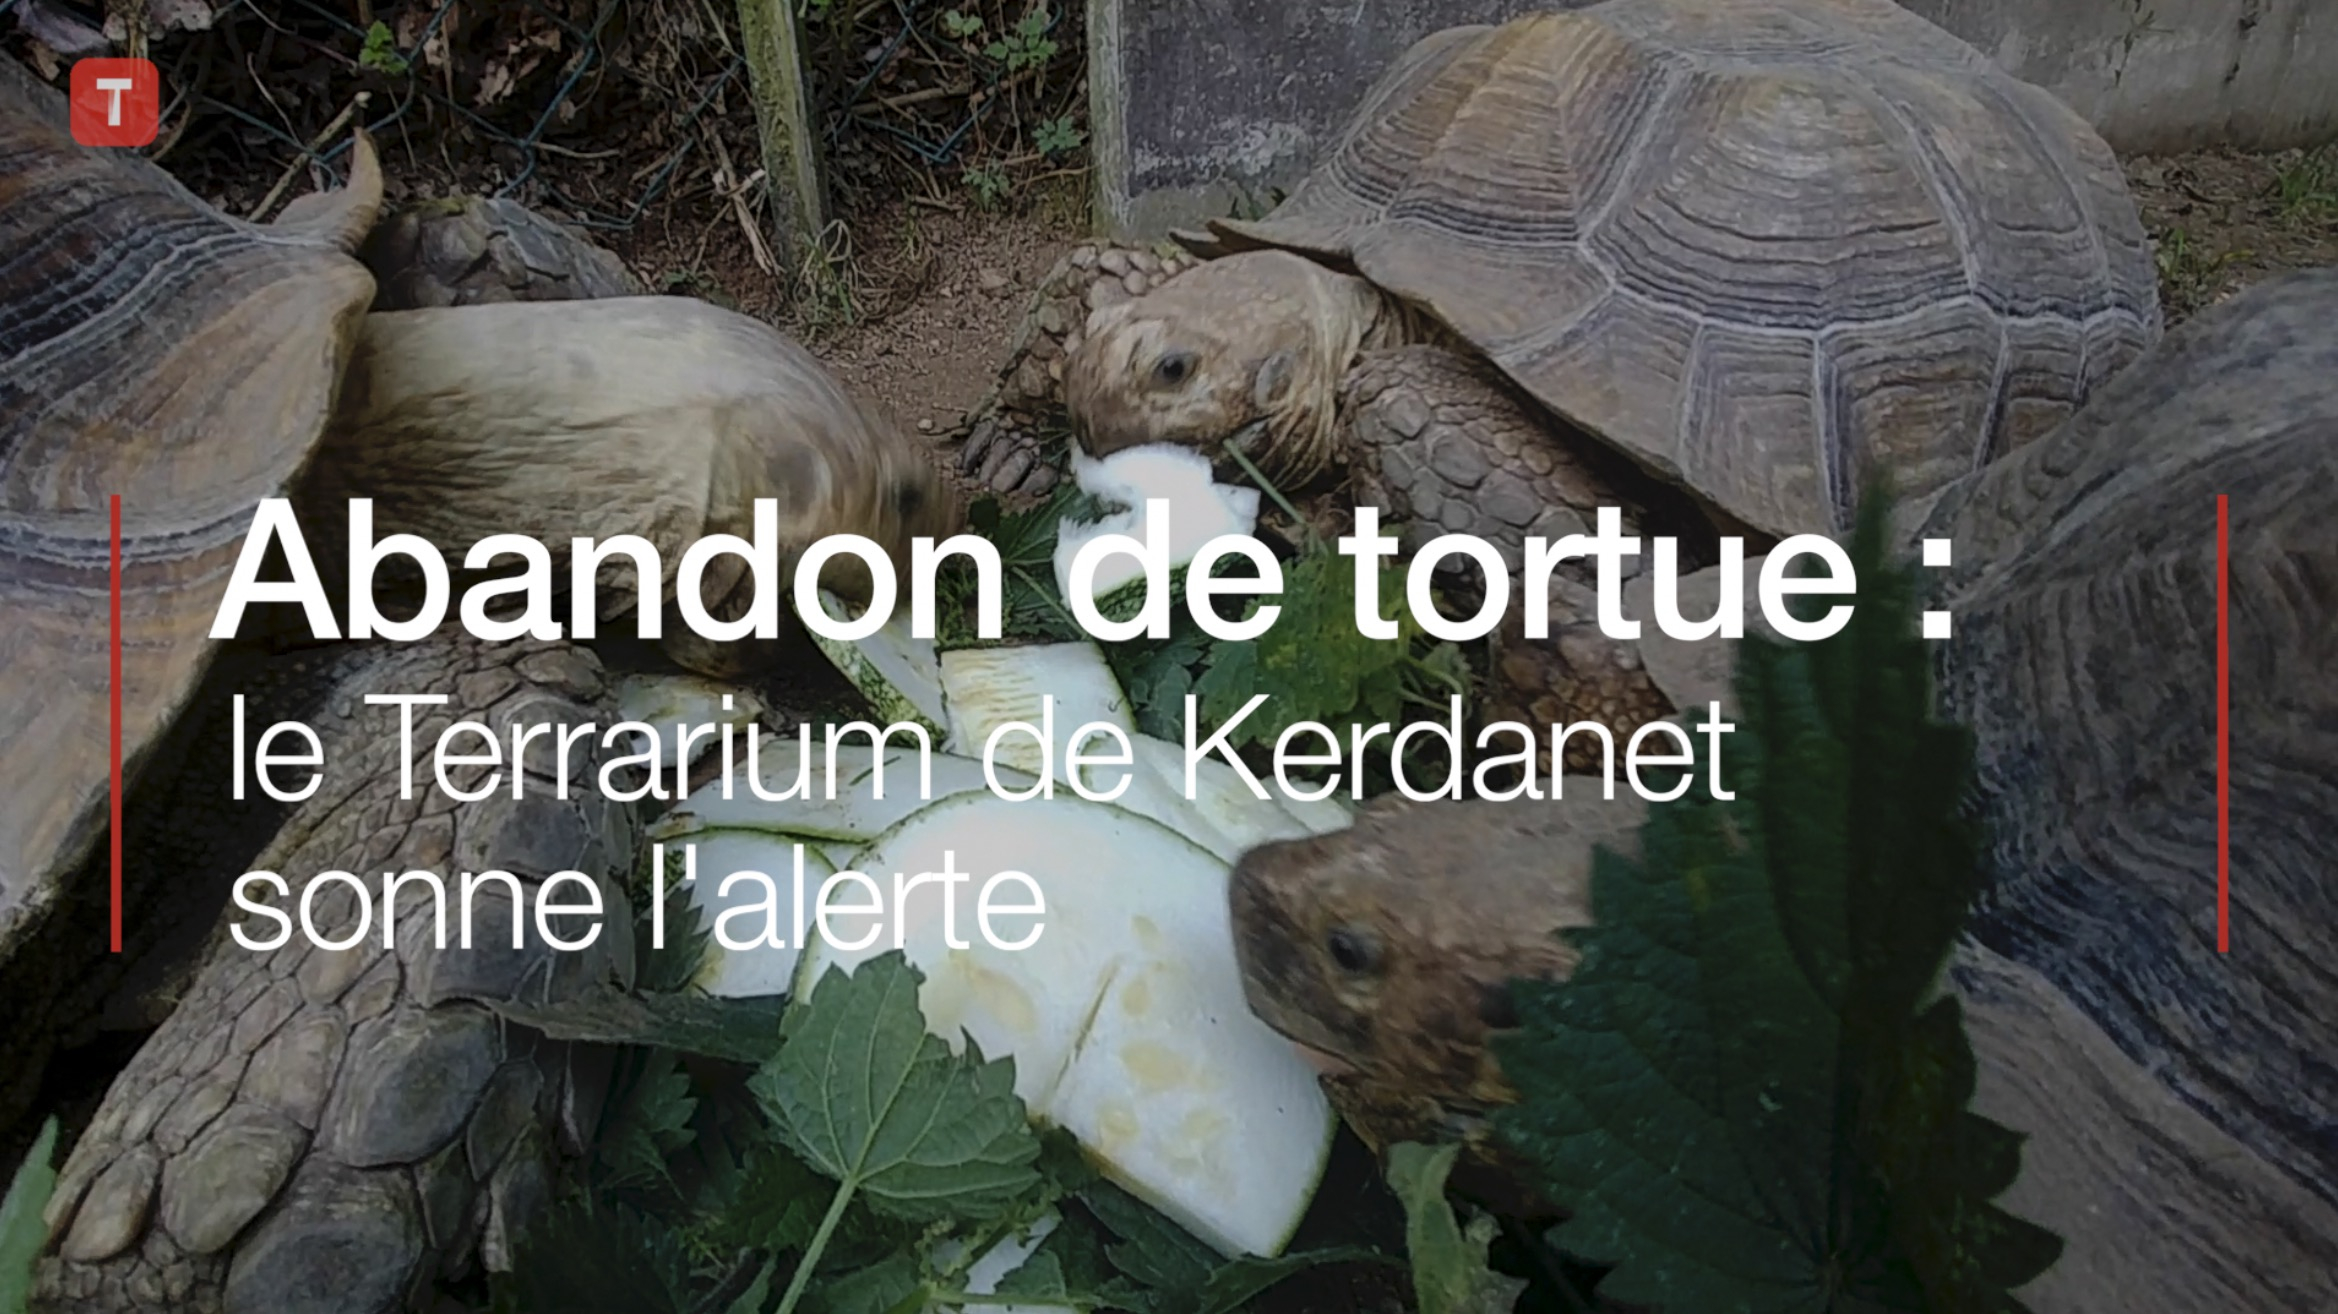 Abandon de tortue : le Terrarium de Kerdanet sonne l'alerte (Le Télégramme)